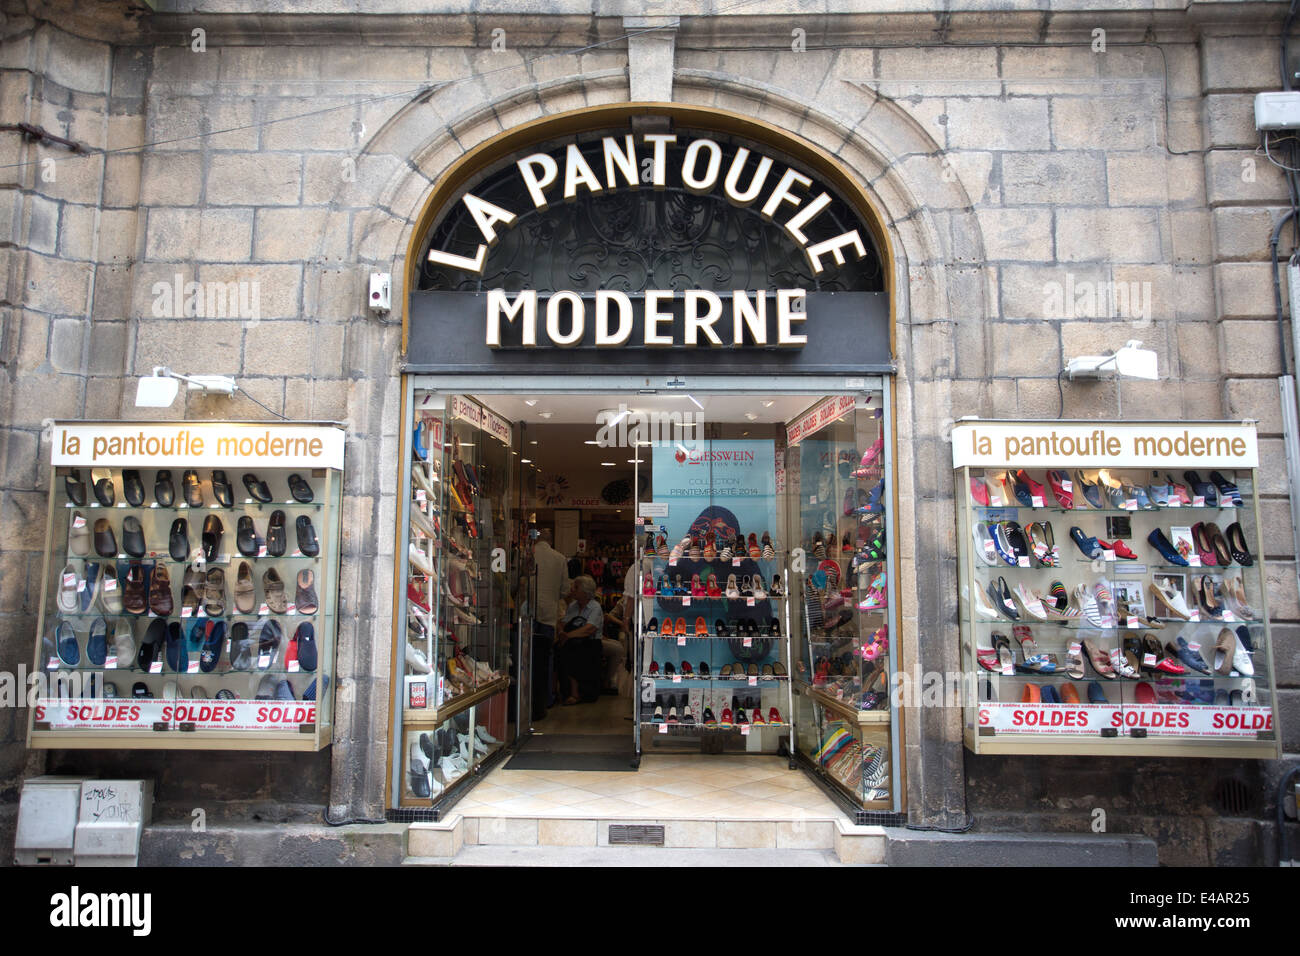 La Pantoufle Moderne, Rue Ferrerie, Limoges, Haute-Vienne, Limousin region,  France Stock Photo